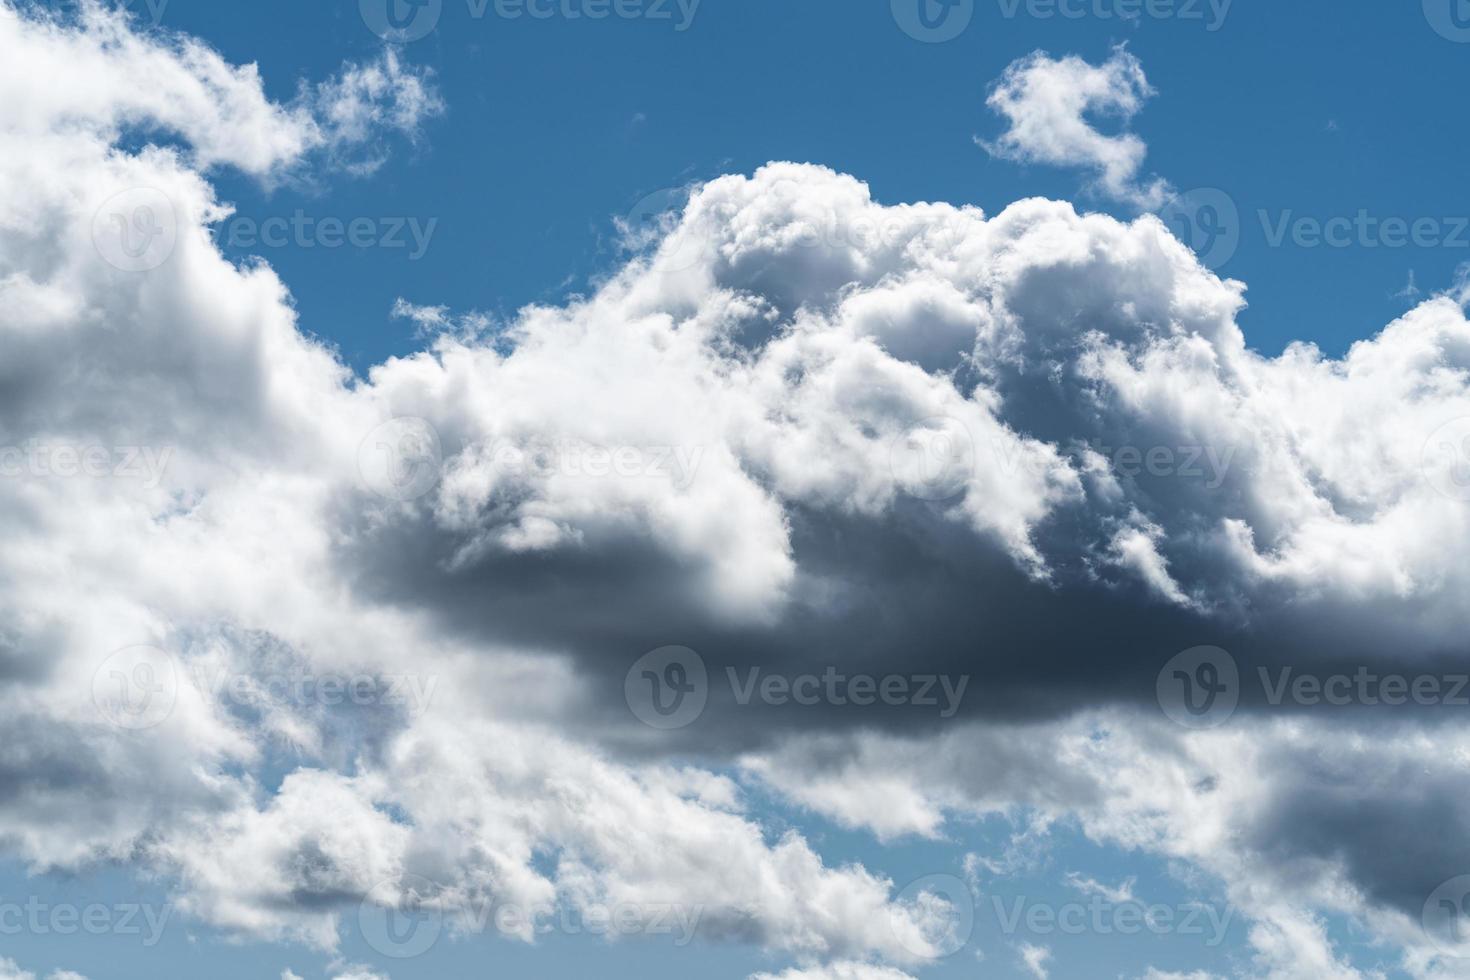 Cumuluswolken in einem blauen Himmel foto